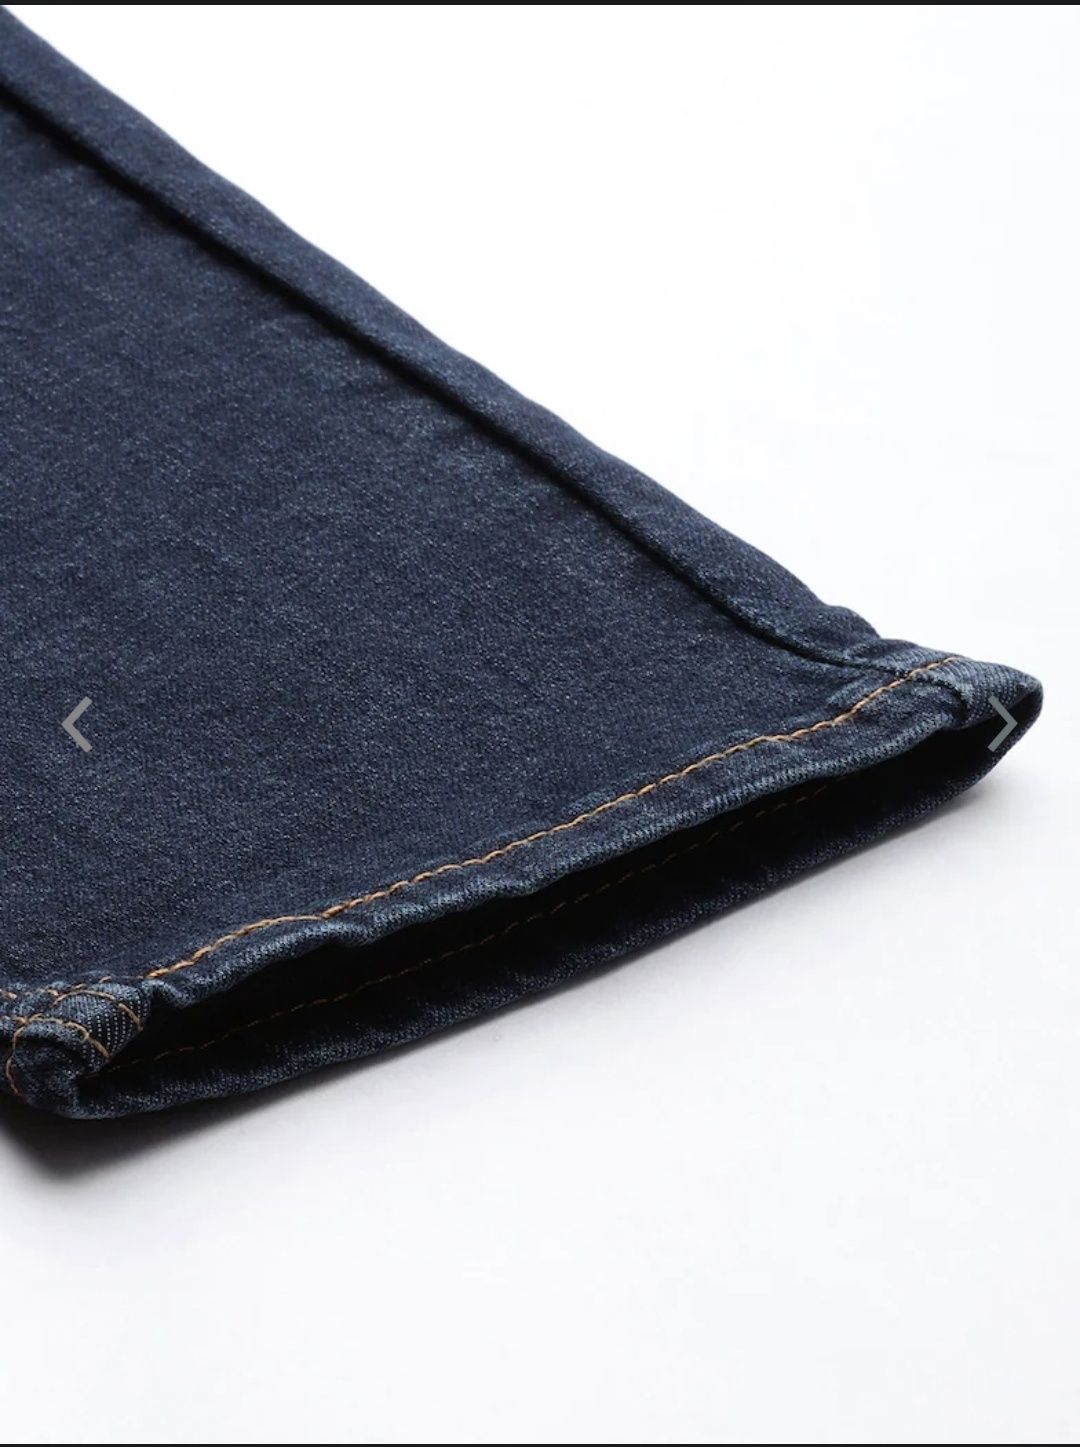 Тёмно-синие джинсы Levi's оригинал размер 32